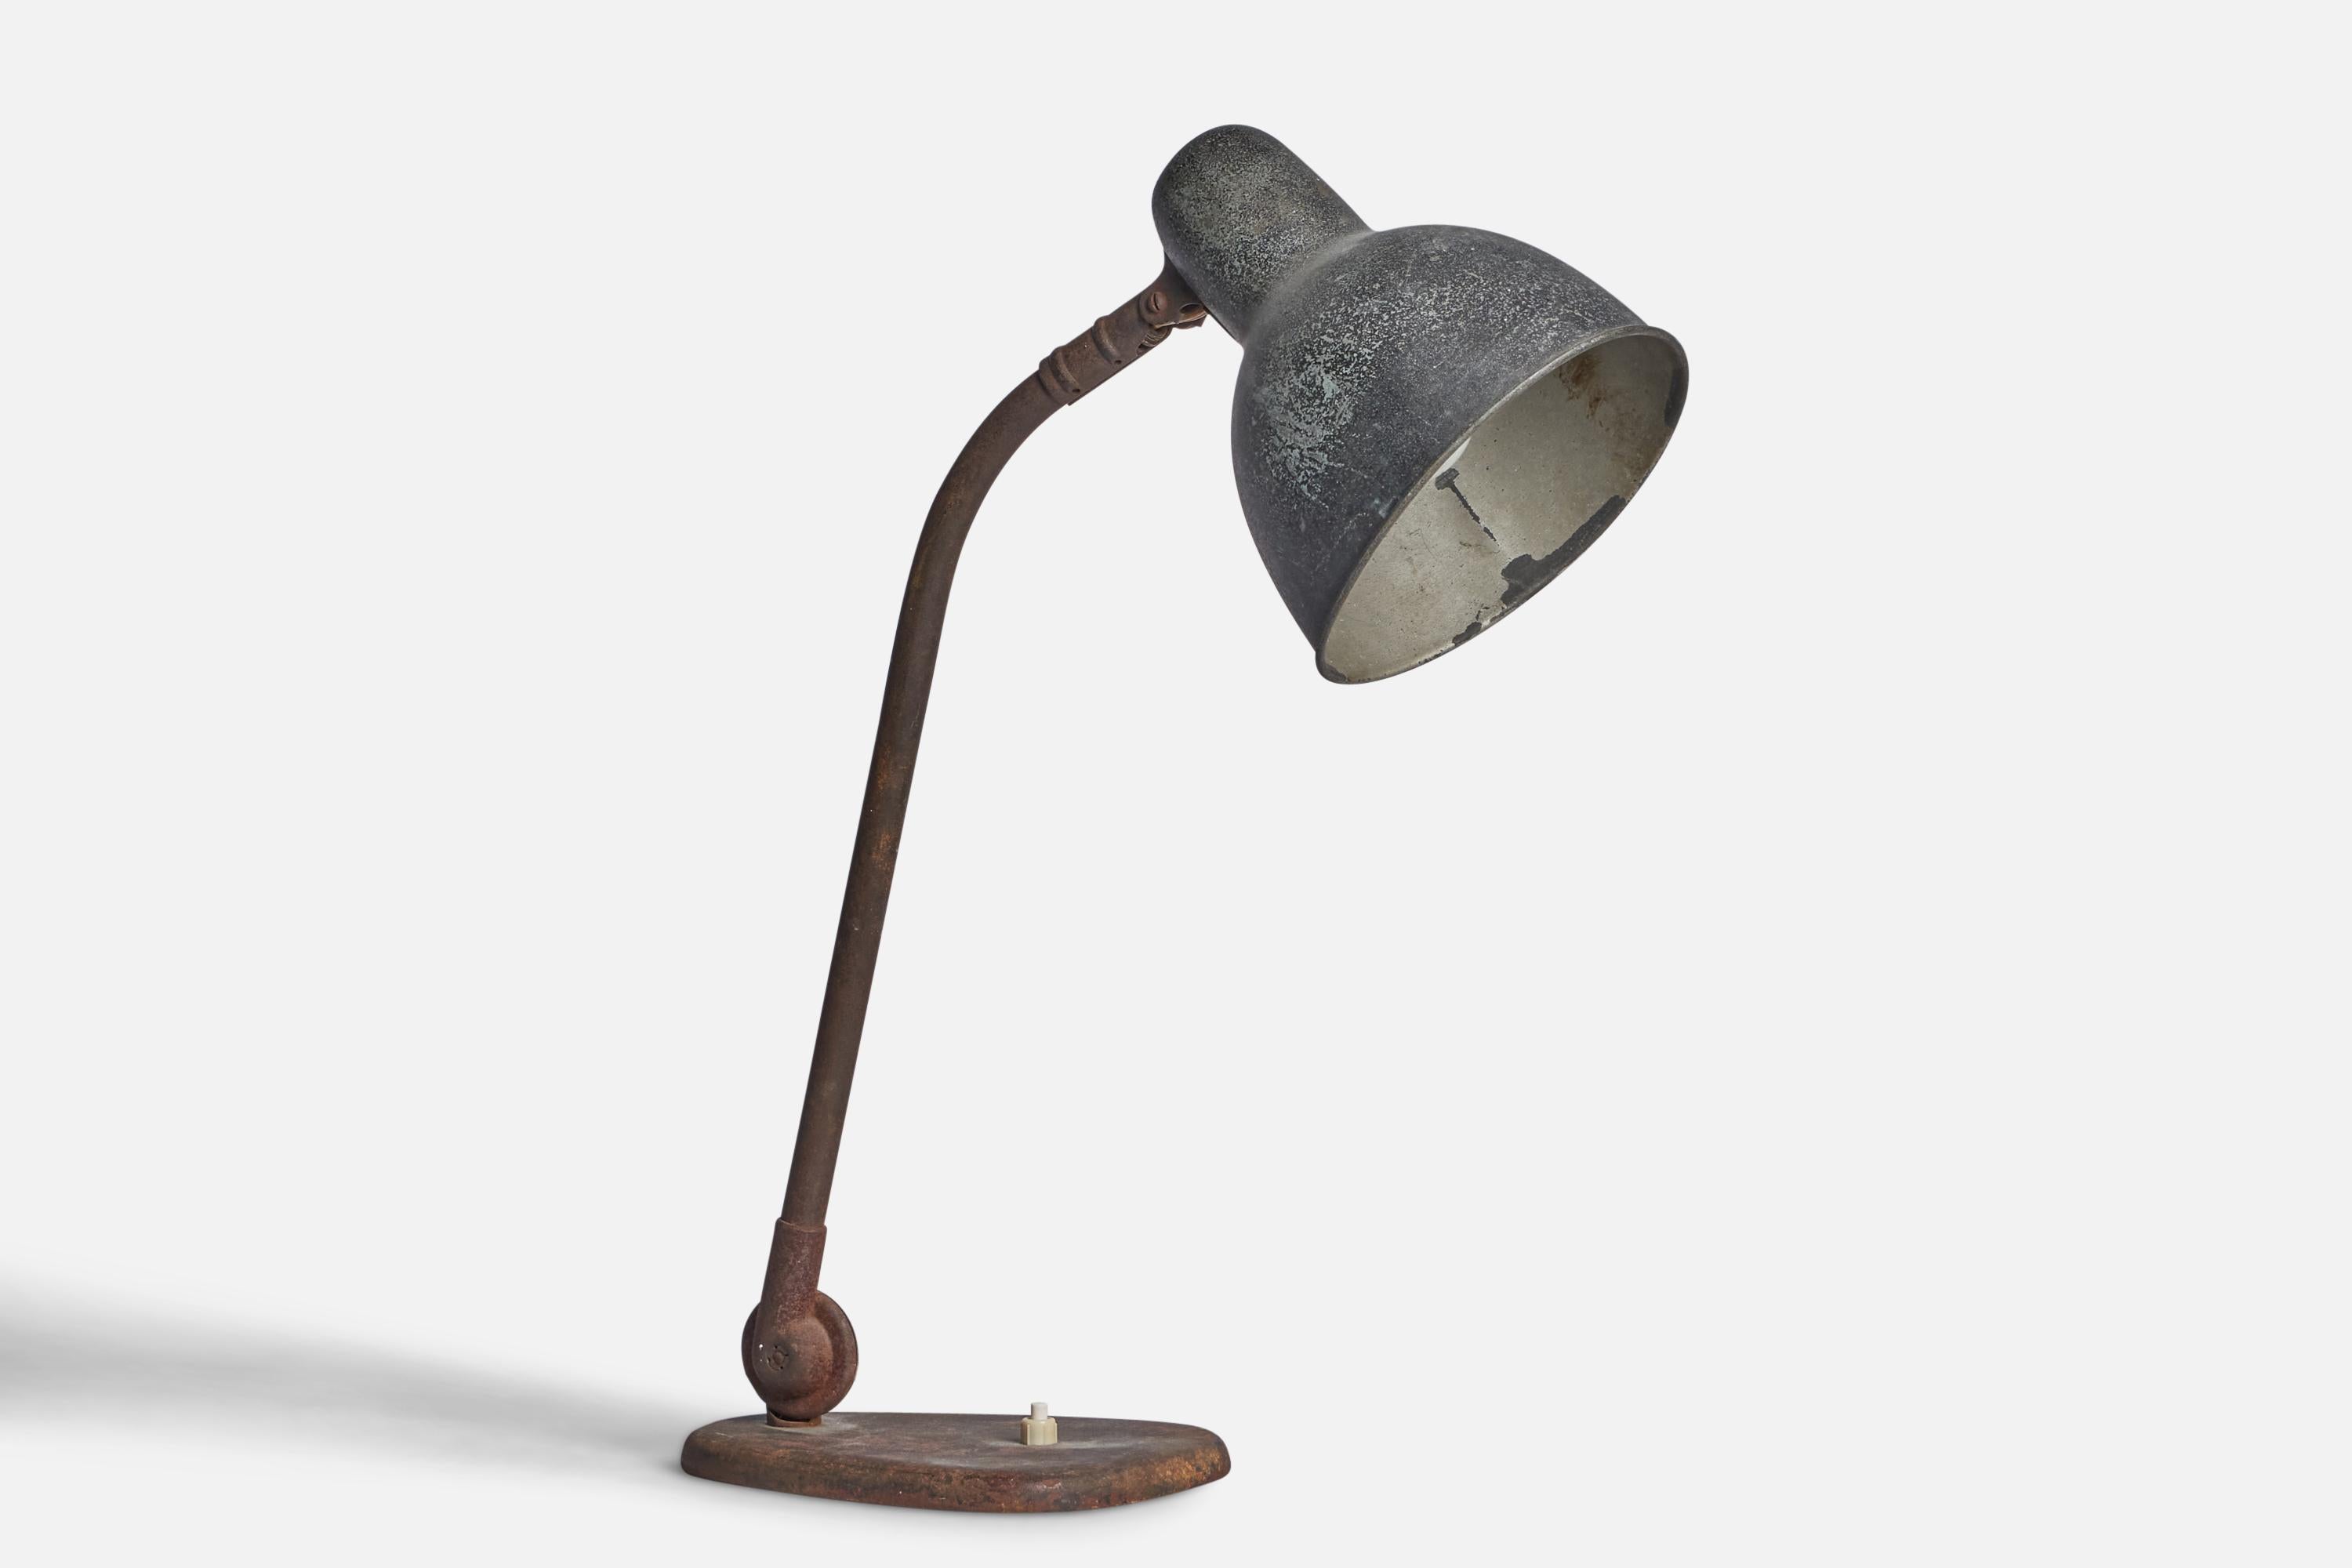 Eine verstellbare Tischlampe aus Metall, entworfen und hergestellt in Deutschland, 1930er Jahre.

Abmessungen der Lampe (Zoll): 18,9